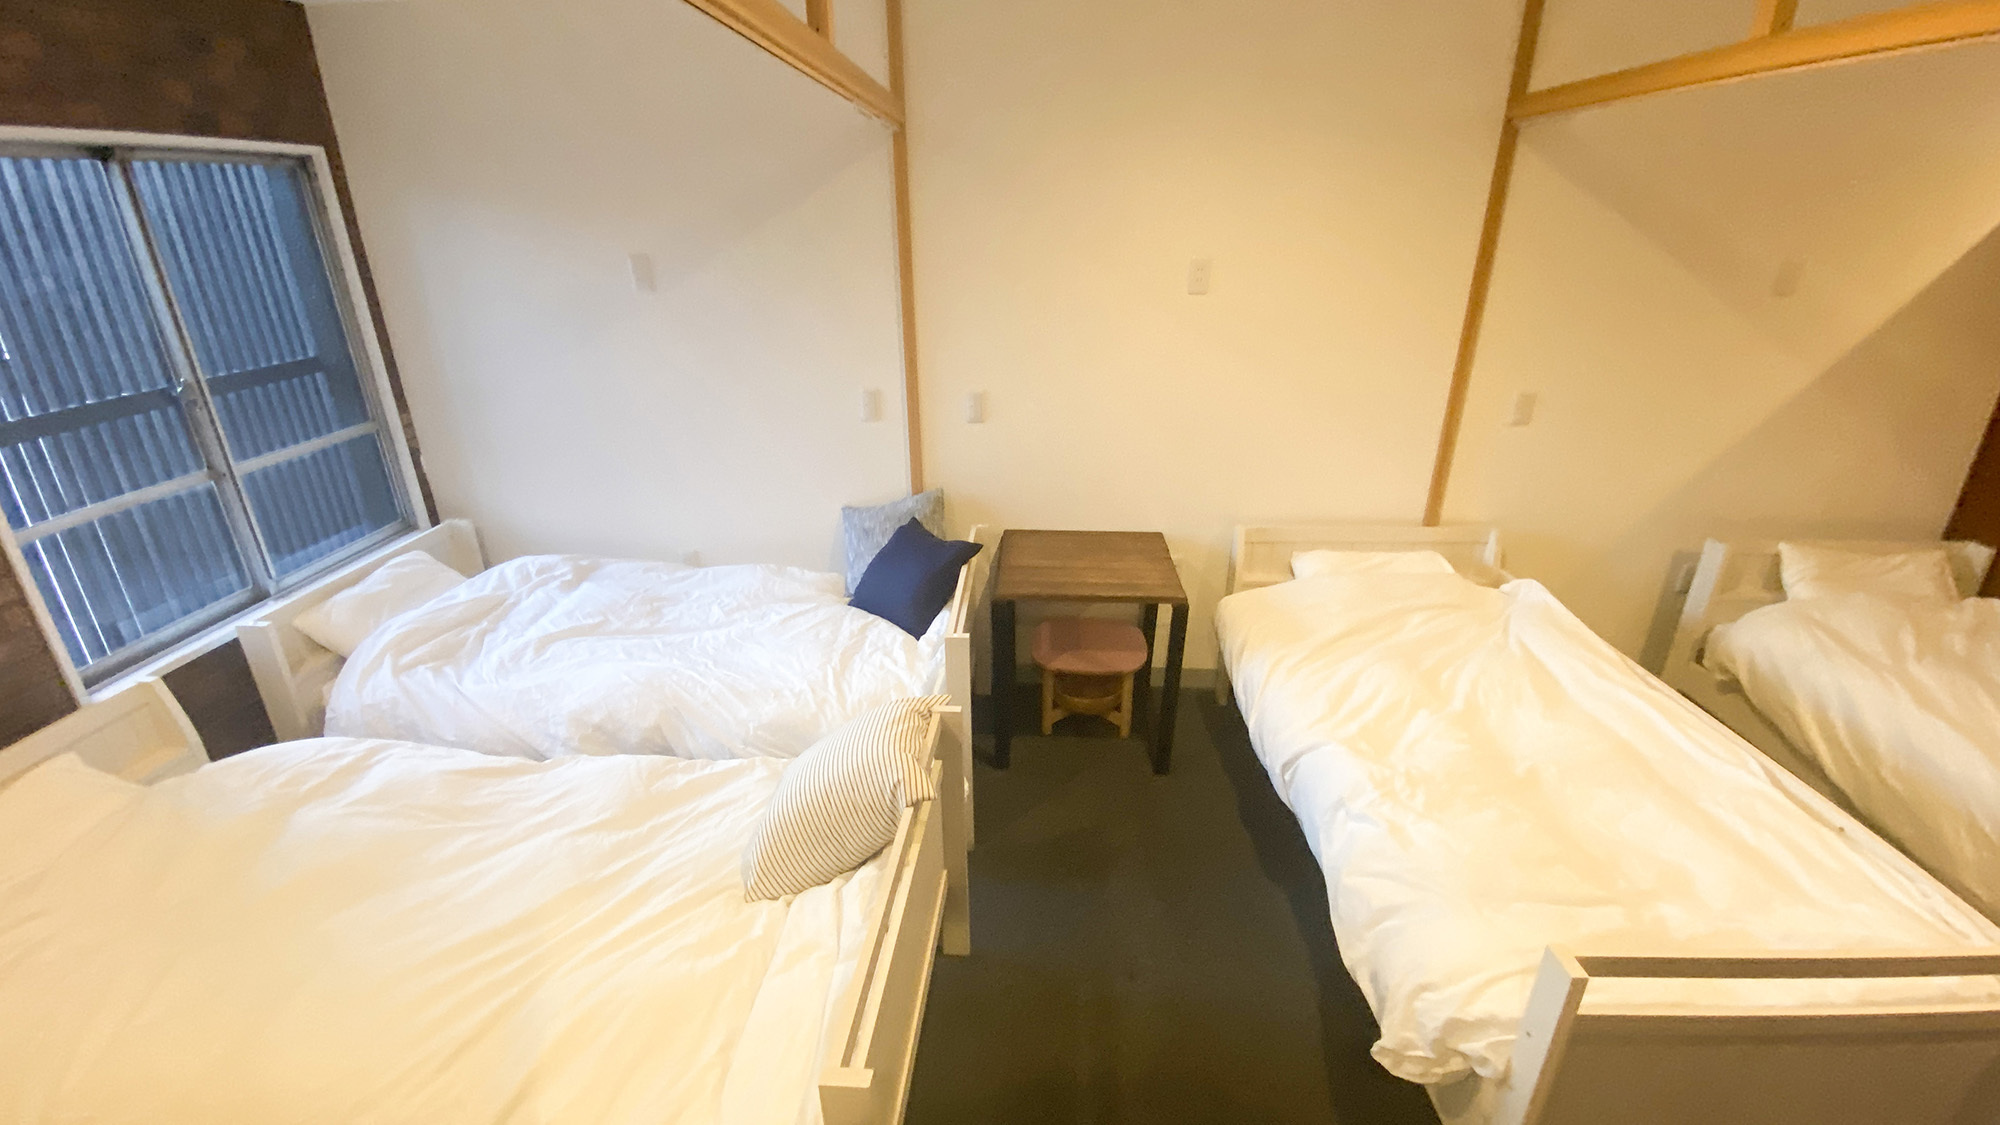 ・【4名用様半個室】シングルベッド4台を設置。半個室なので防音性はありません